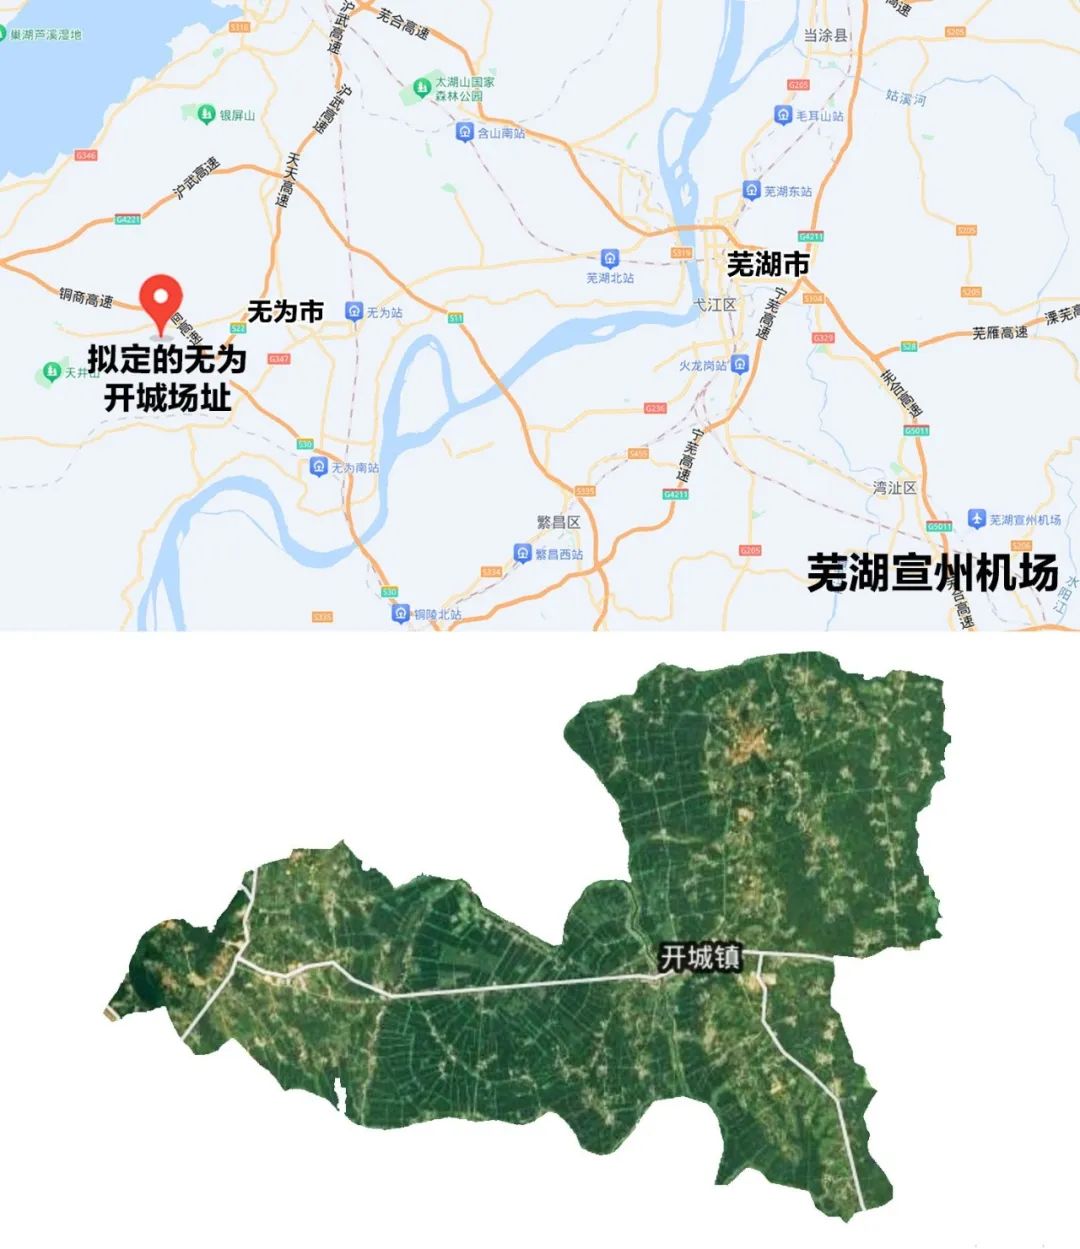 芜湖无为通用机场场址——初选场址与城市规划位置关系图